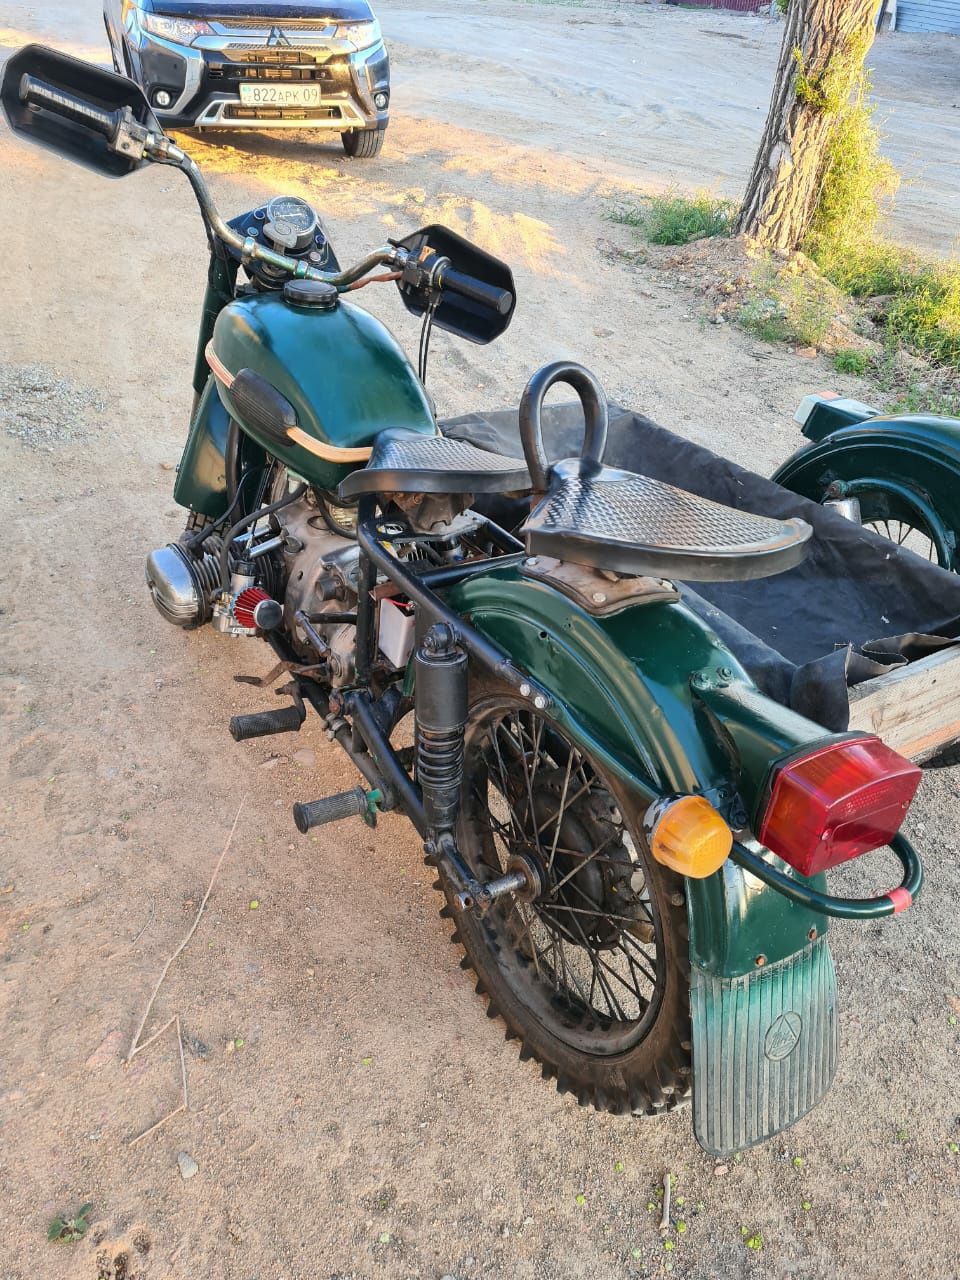 Продается мотоцикл Урал